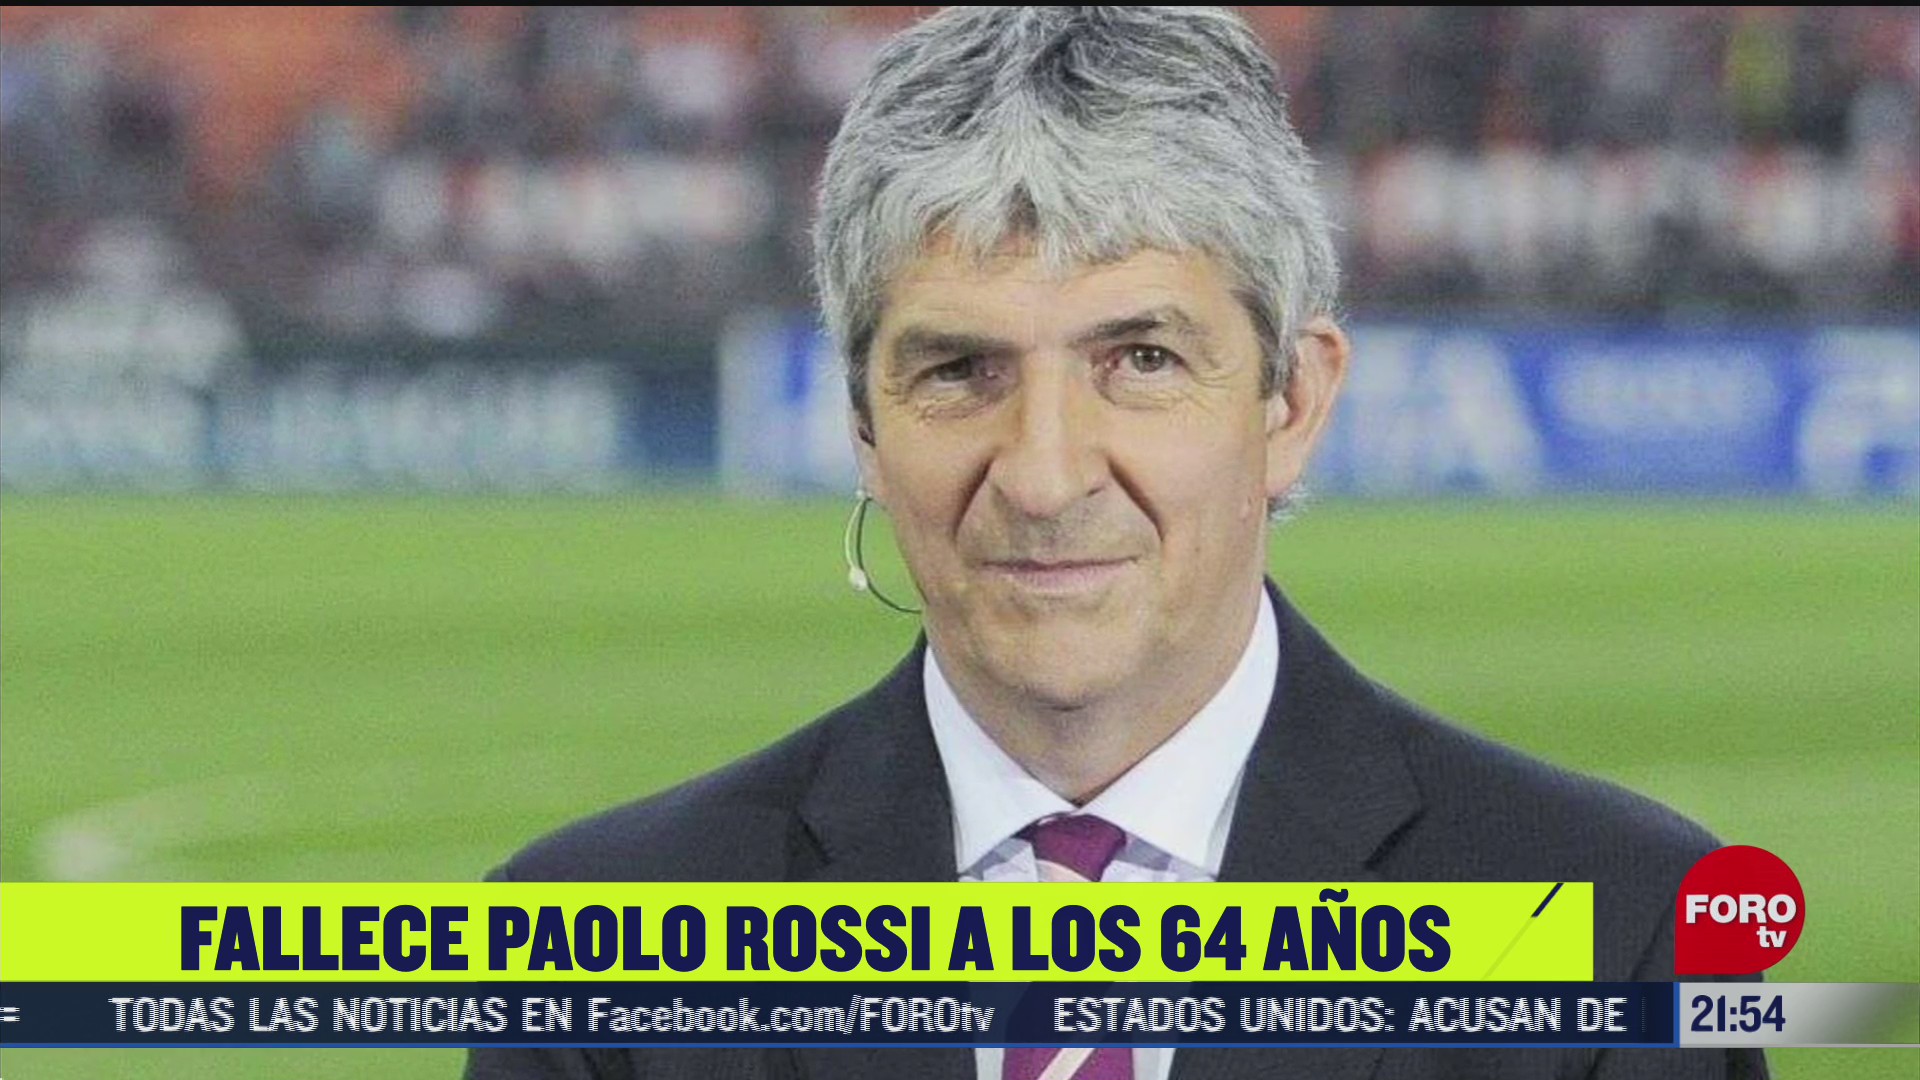 muere el exfutbolista italiano paolo rossi a los 64 anos de edad